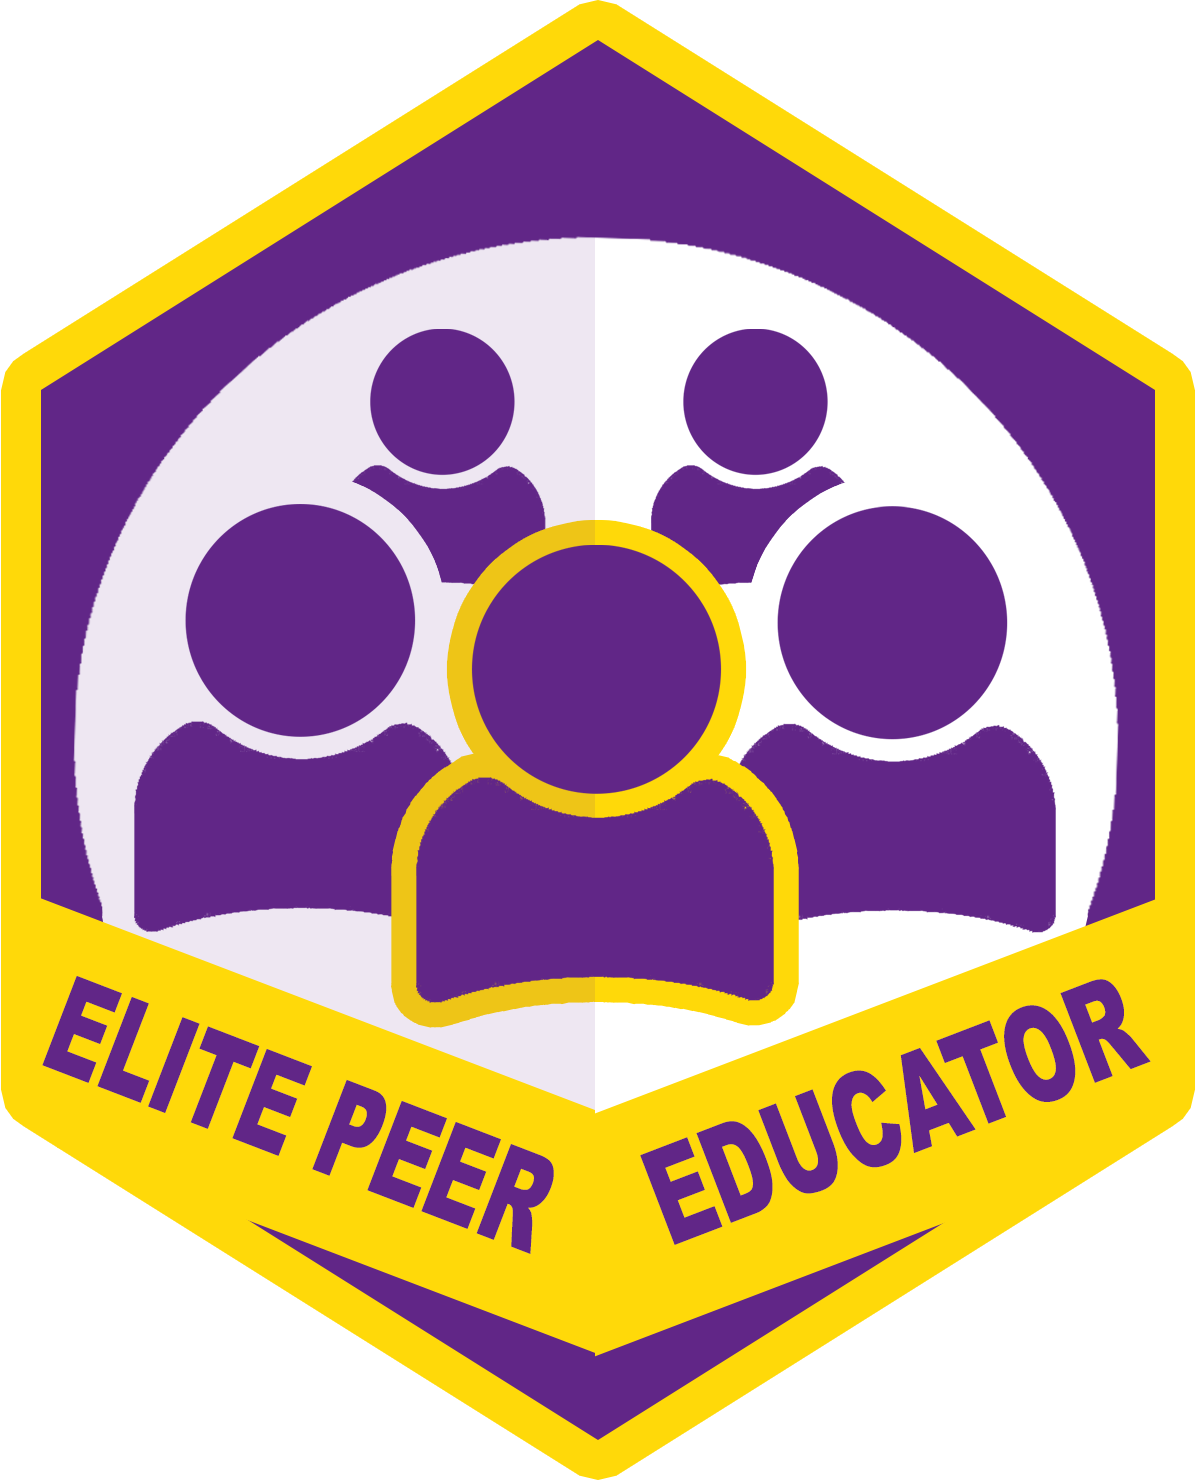 Elite Peer Educator Badge